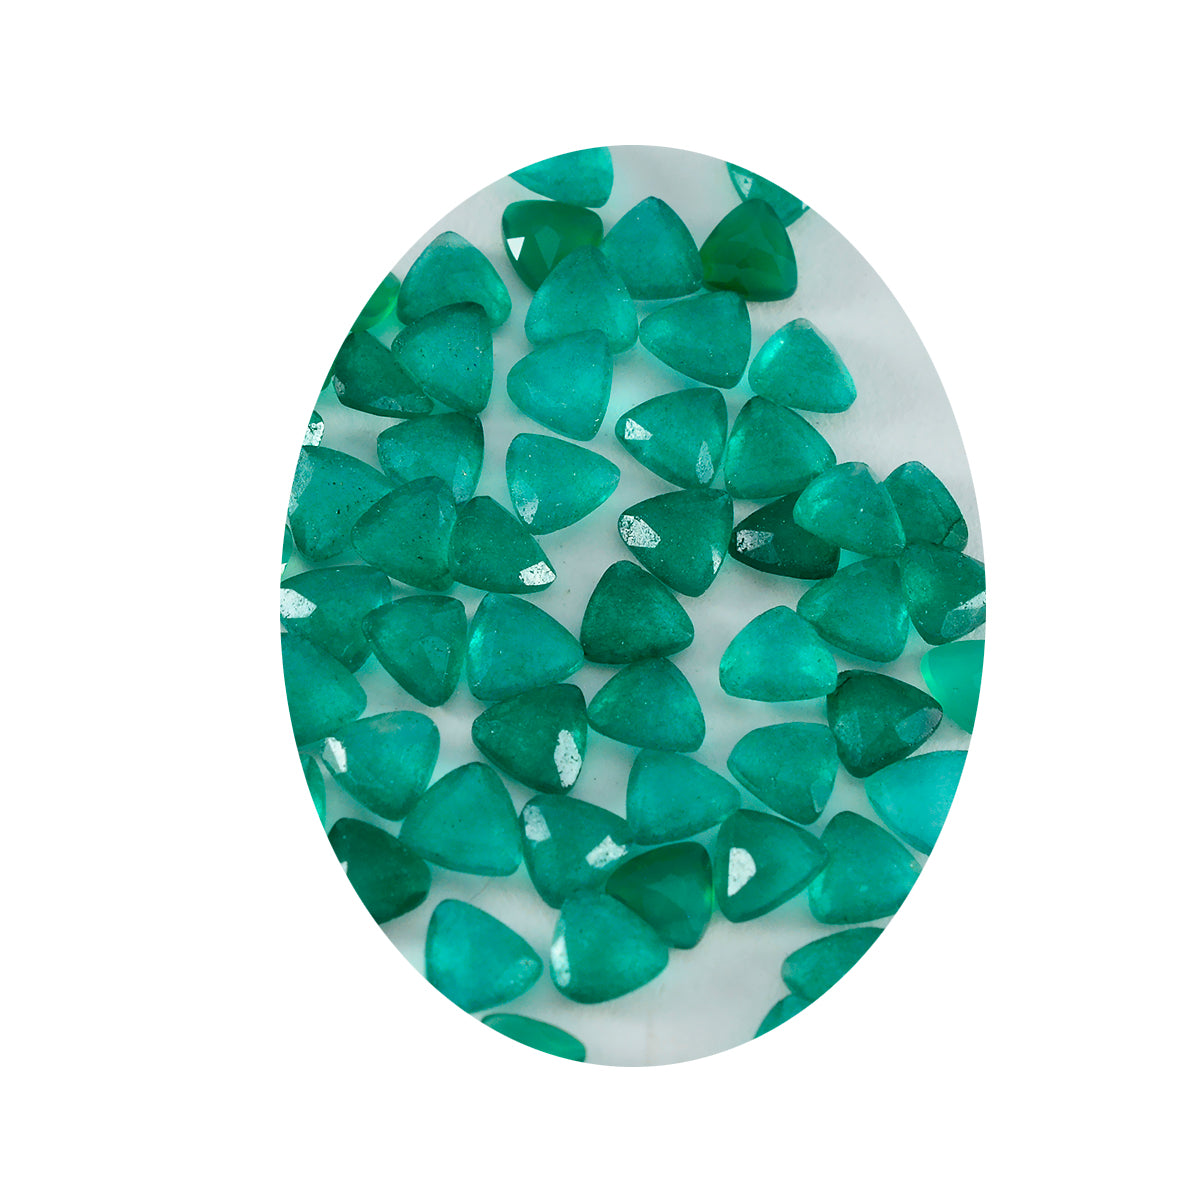 Riyogems 1 pieza jaspe verde Natural facetado 7x7mm forma de trillón gemas sueltas de buena calidad